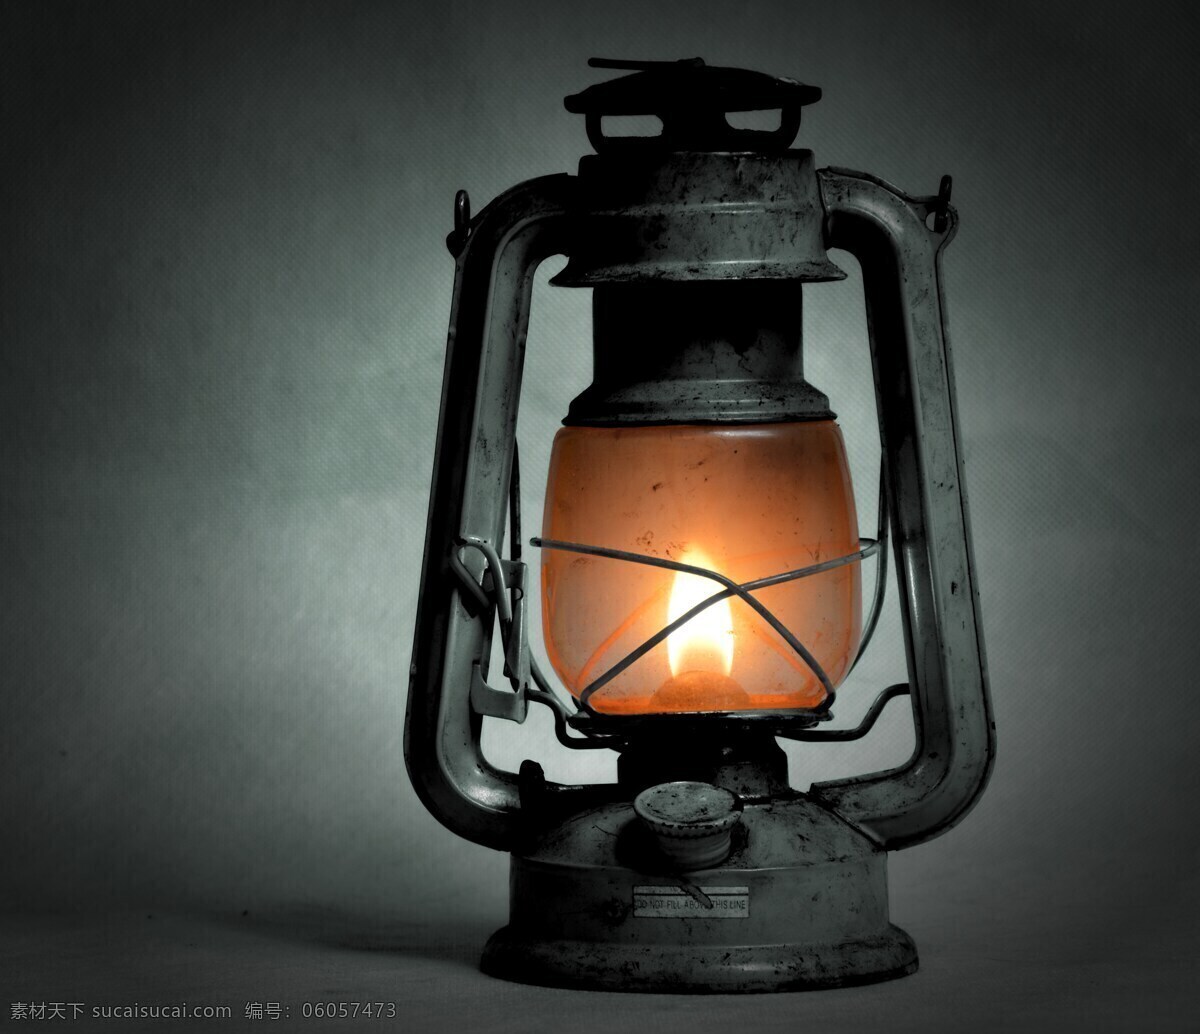 煤油灯 灯泡 闪耀 照明 古董 光散射 灯罩 老式煤油灯 马灯 黑色